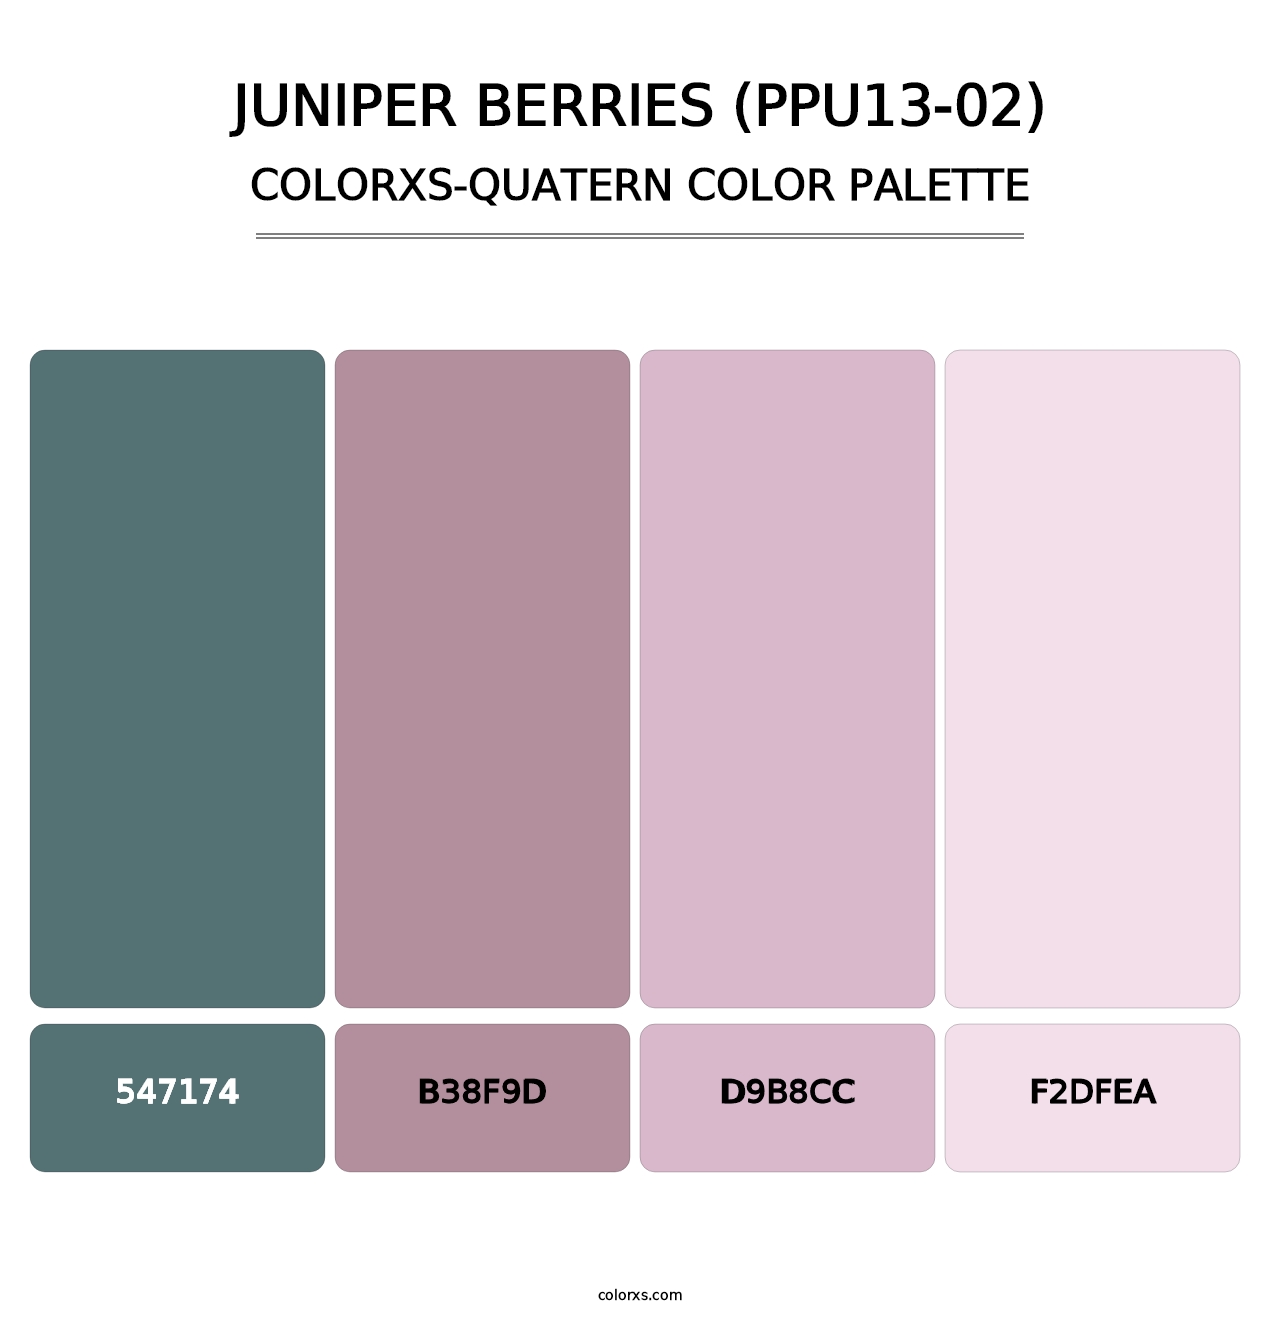 Juniper Berries (PPU13-02) - Colorxs Quatern Palette